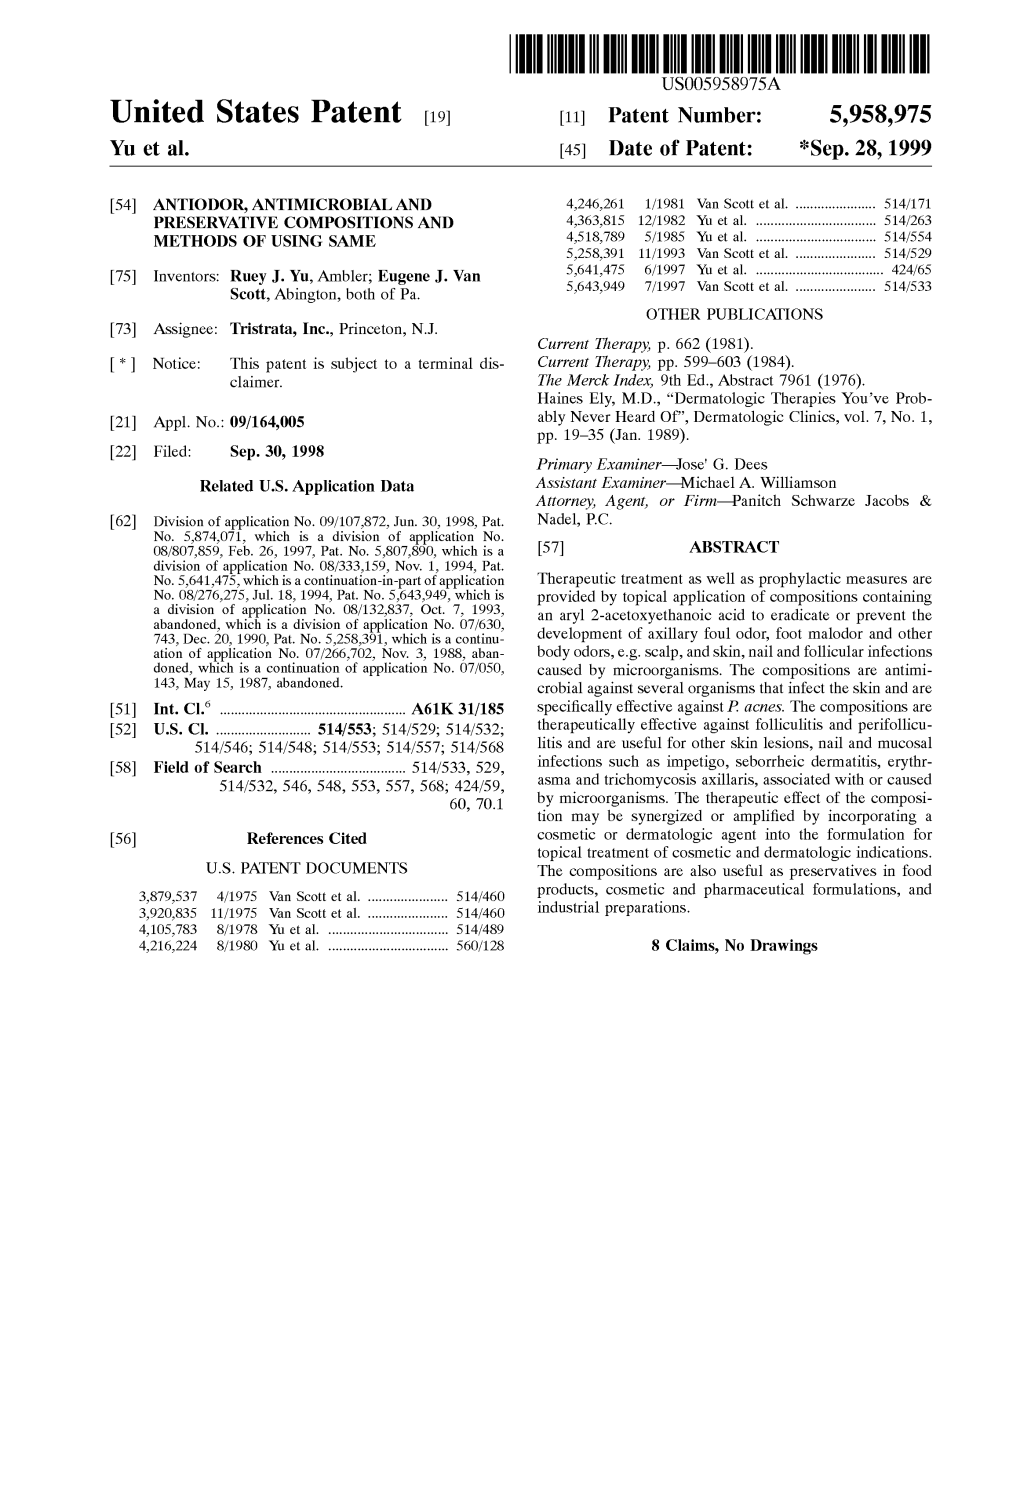 United States Patent (19) 11 Patent Number: 5,958,975 Yu Et Al